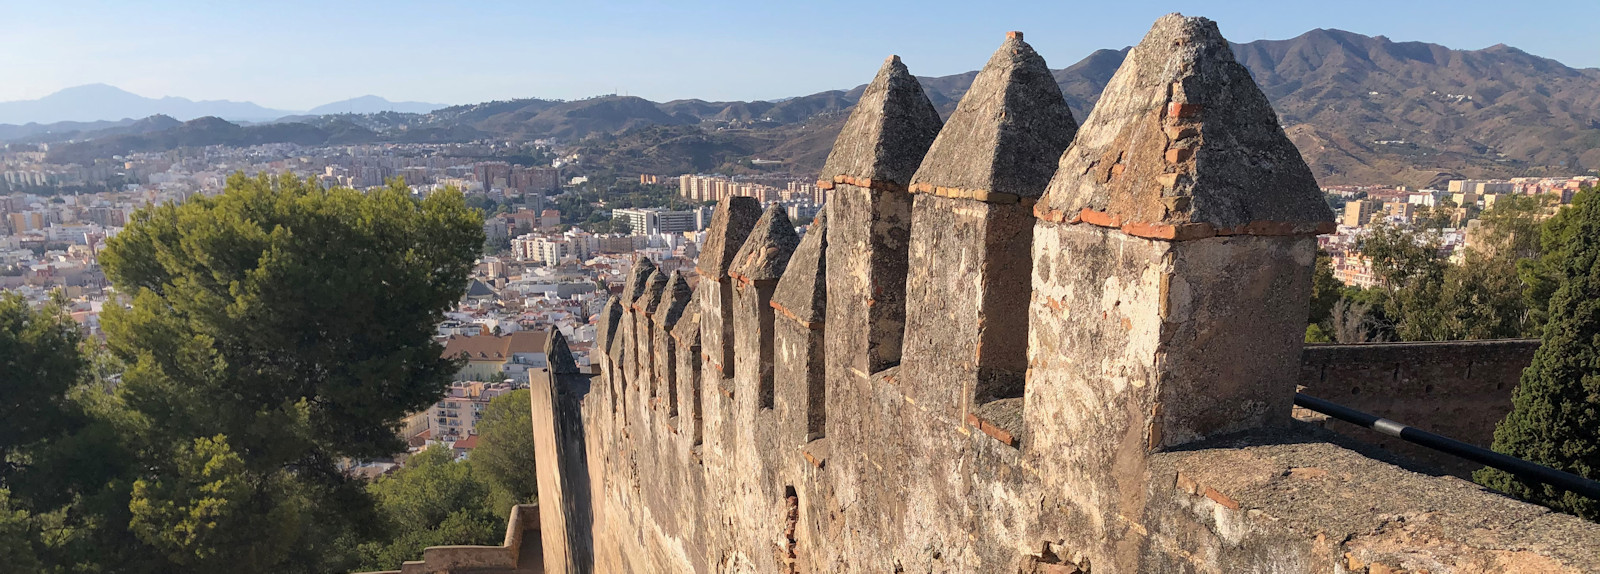 Málaga: Fæstningsværkerne Alcazaba og Castillo de Gibralfaro